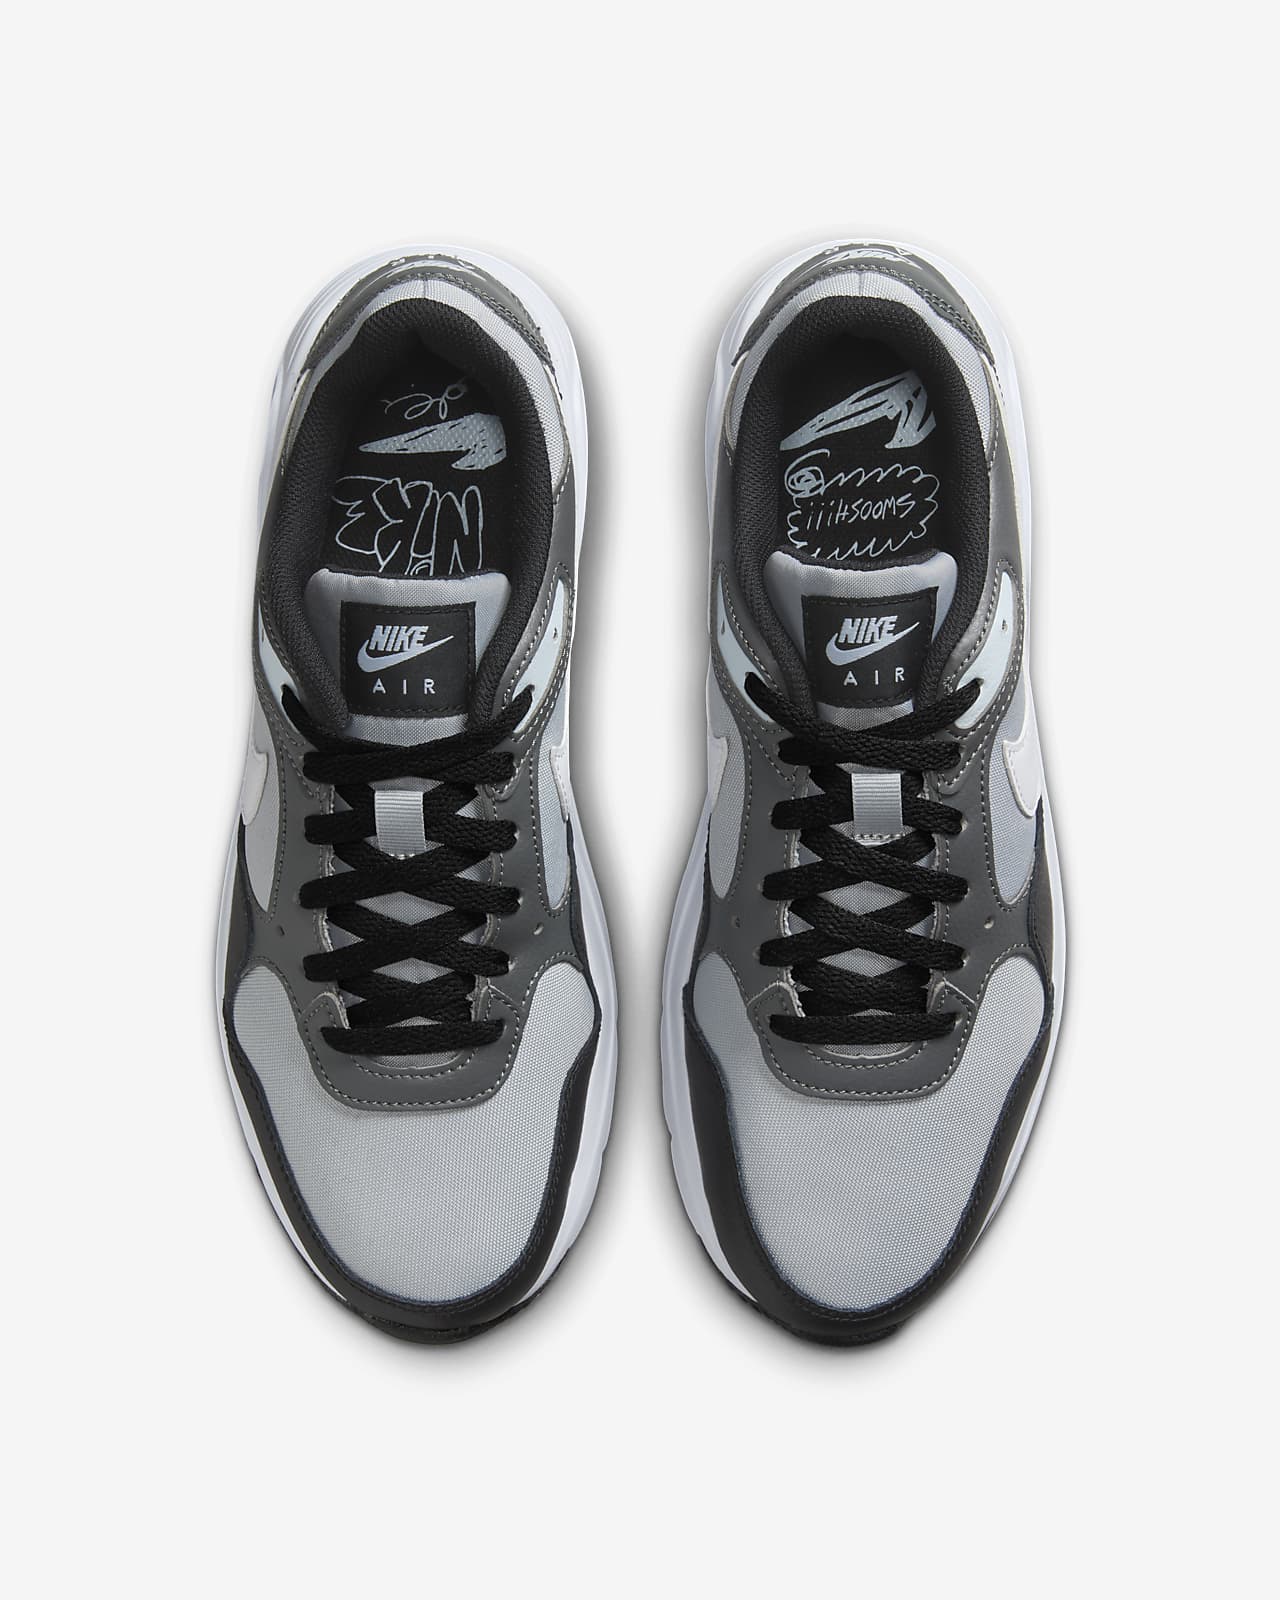 Max Men\'s Shoes. SC Air Nike